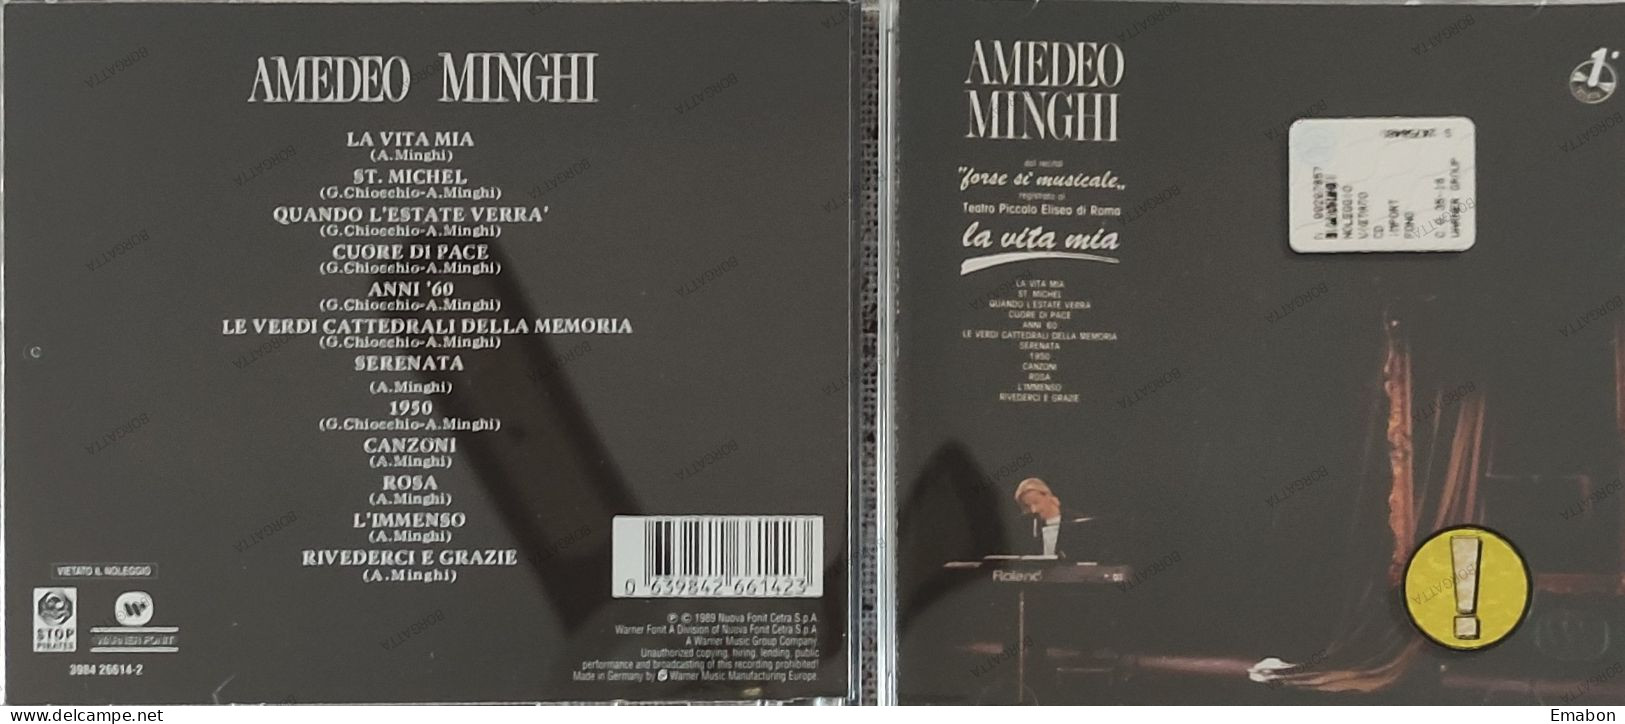 BORGATTA - ITALIANA  - Cd AMEDEO MINGHI - LA VITA MIA - NUOVA FONIT CETRA 1989 -  USATO In Buono Stato - Autres - Musique Italienne